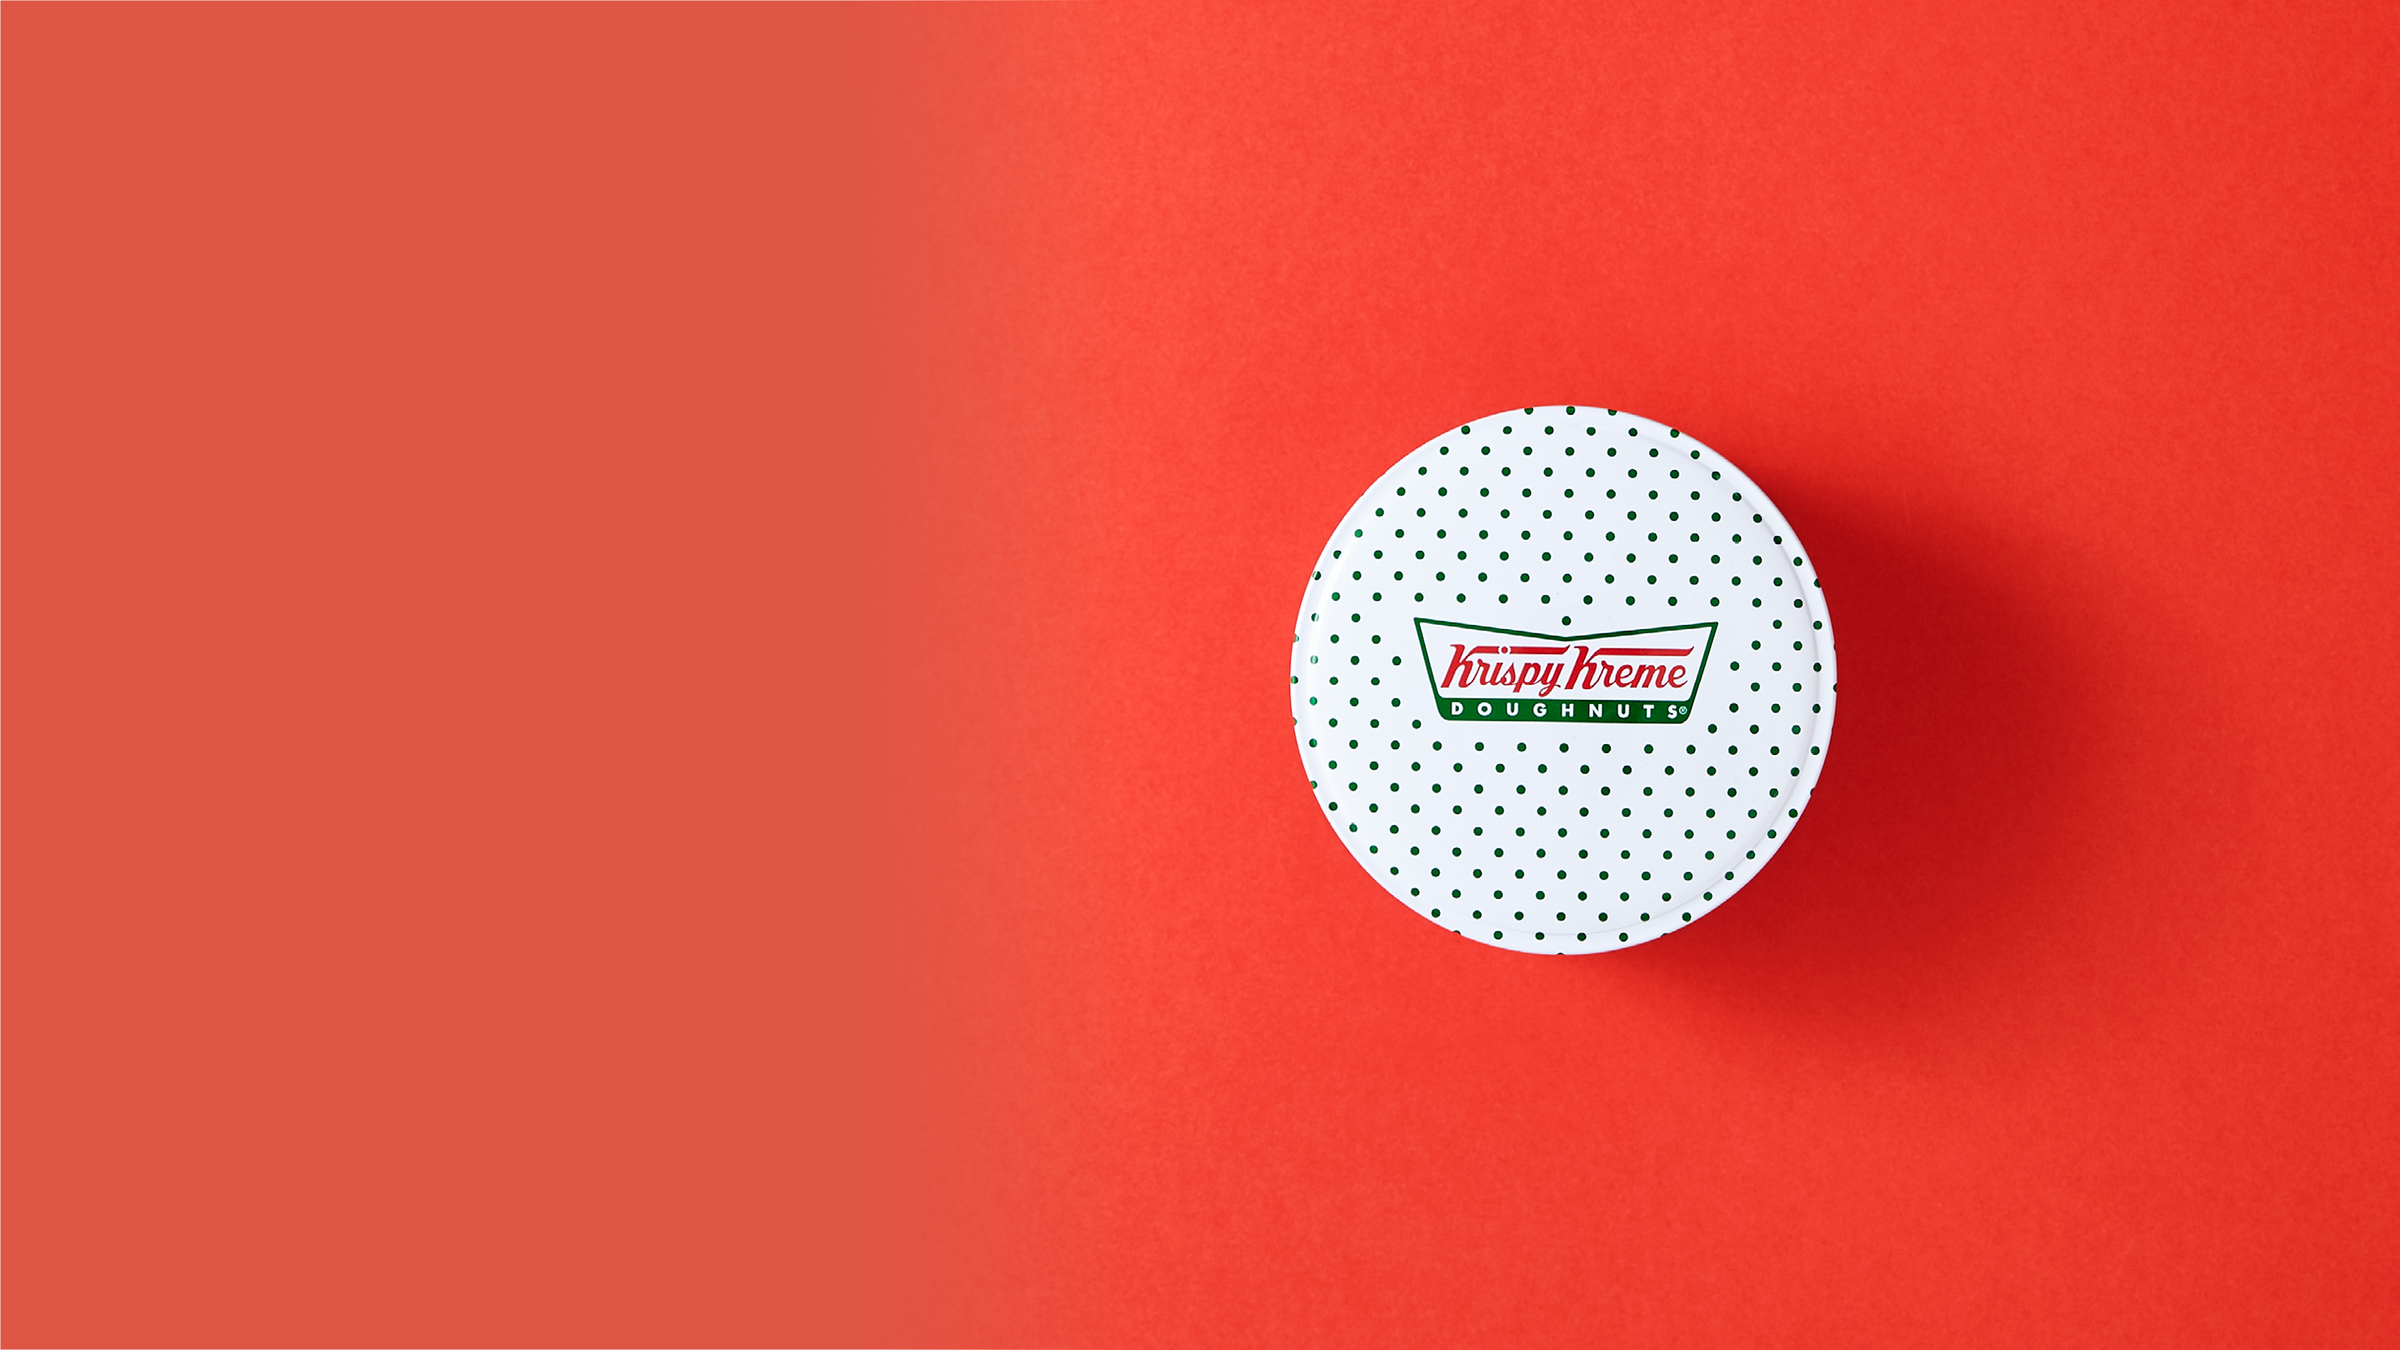 Eine Donut-Dose von Krispy Kreme vor rotem Hintergrund.